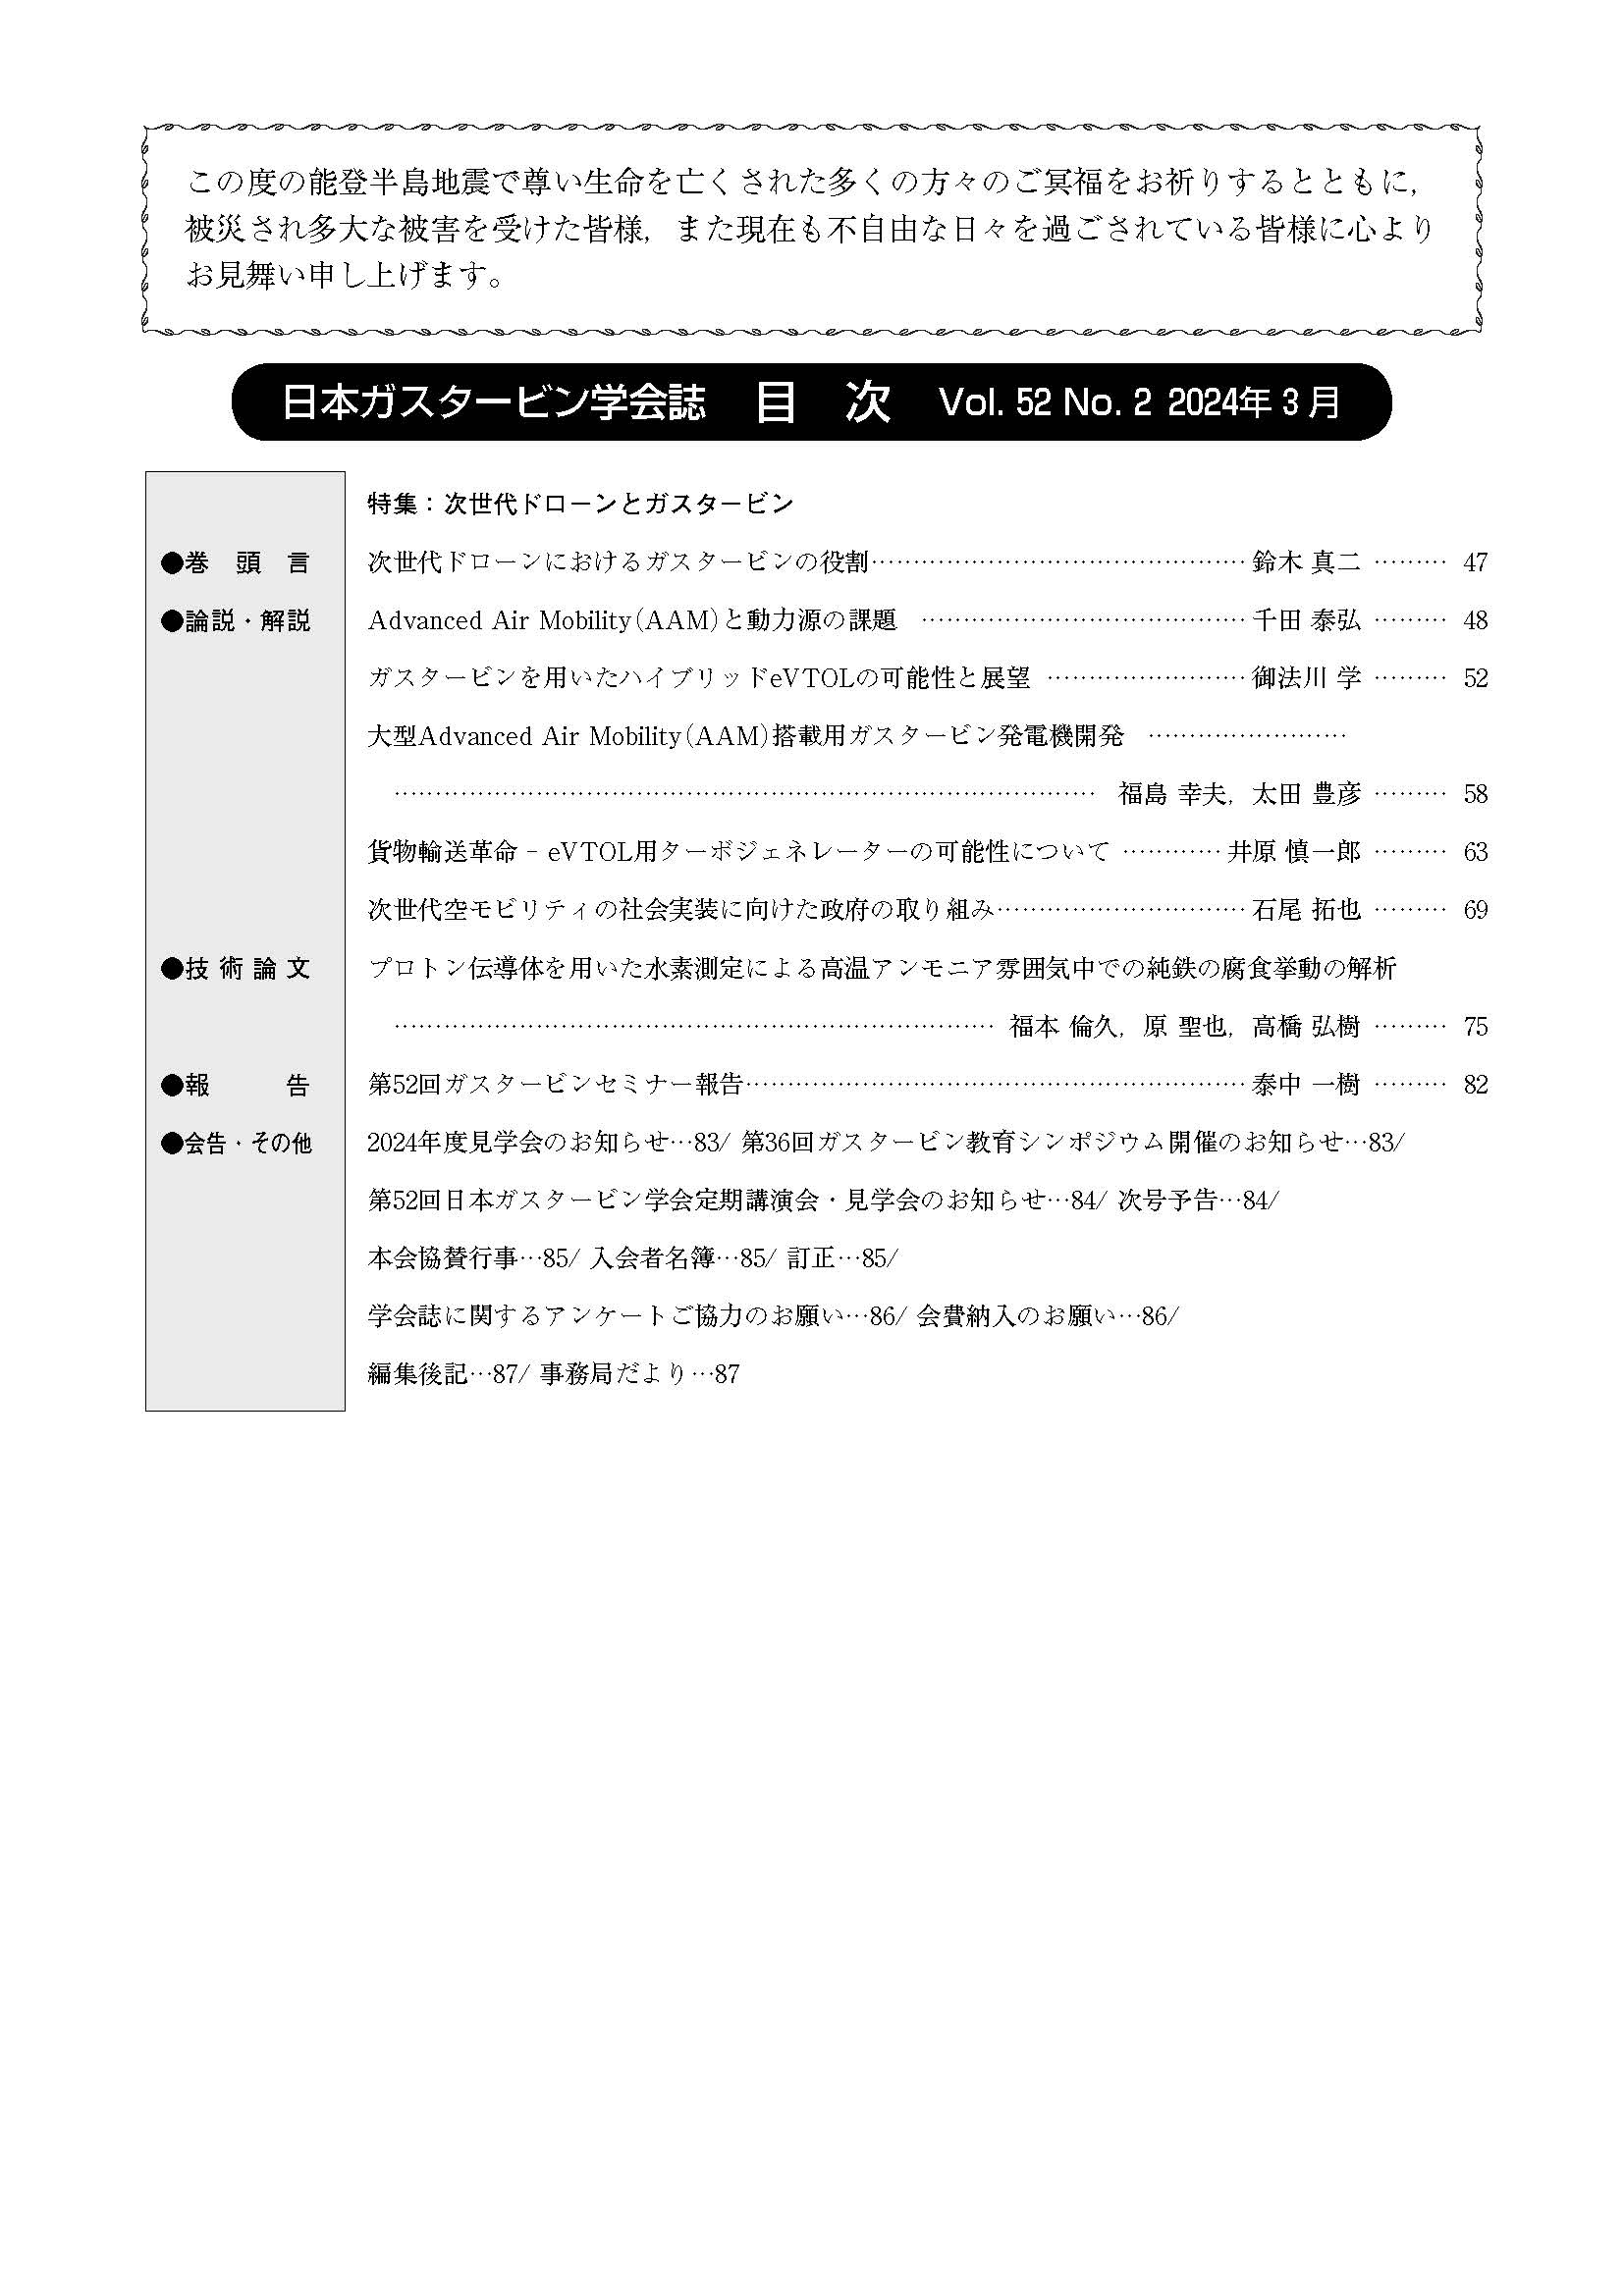 日本ガスタービン学会誌 Vol.52 No.2 2024年3月 目次画像